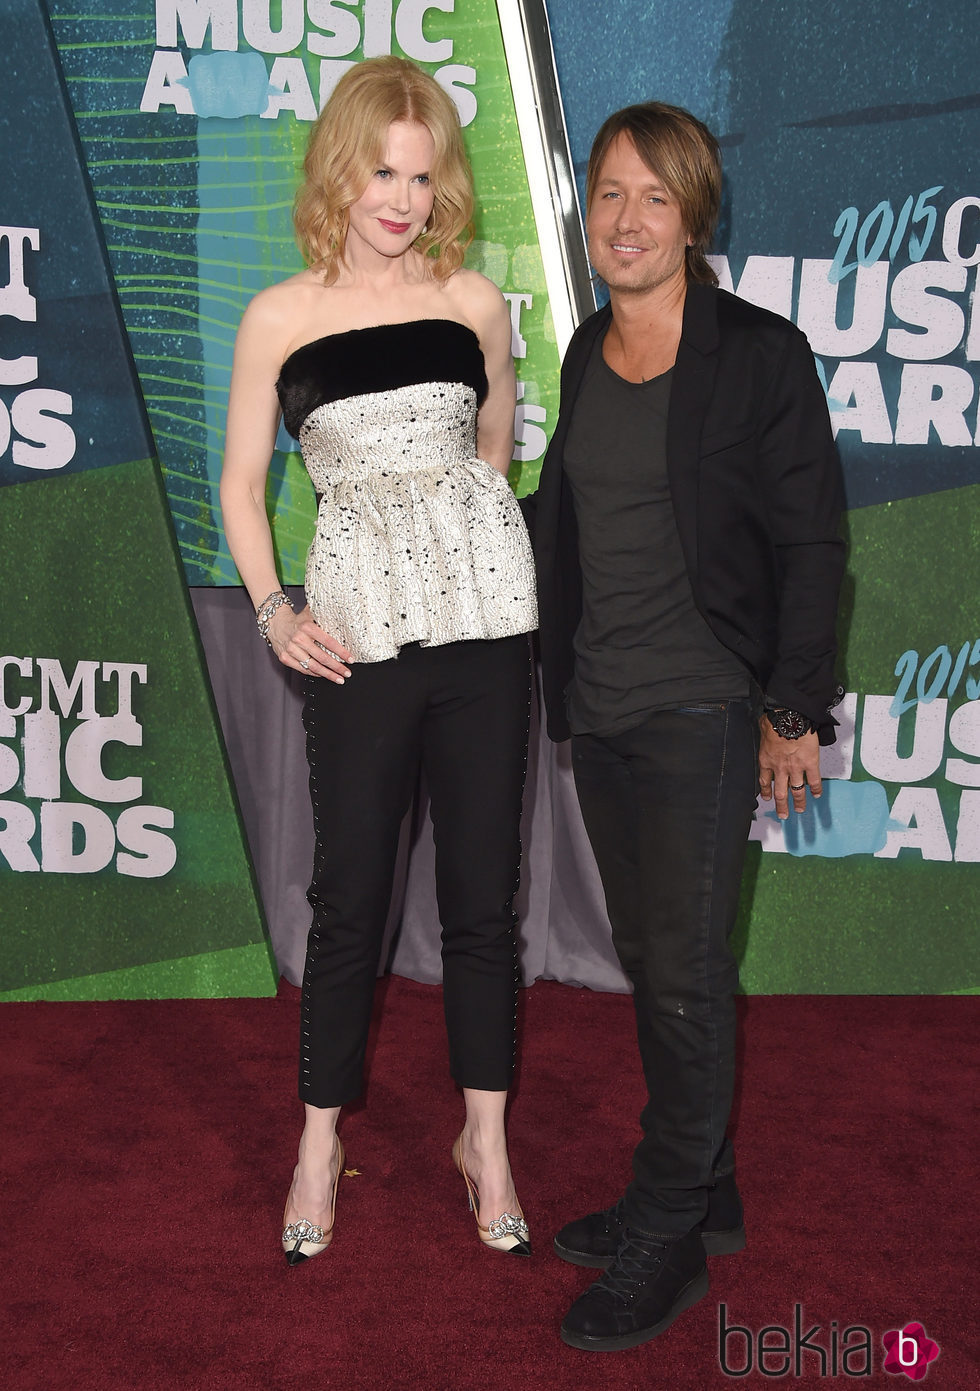 Nicole Kidman y Keith Urban en los CMT Music Awards 2015